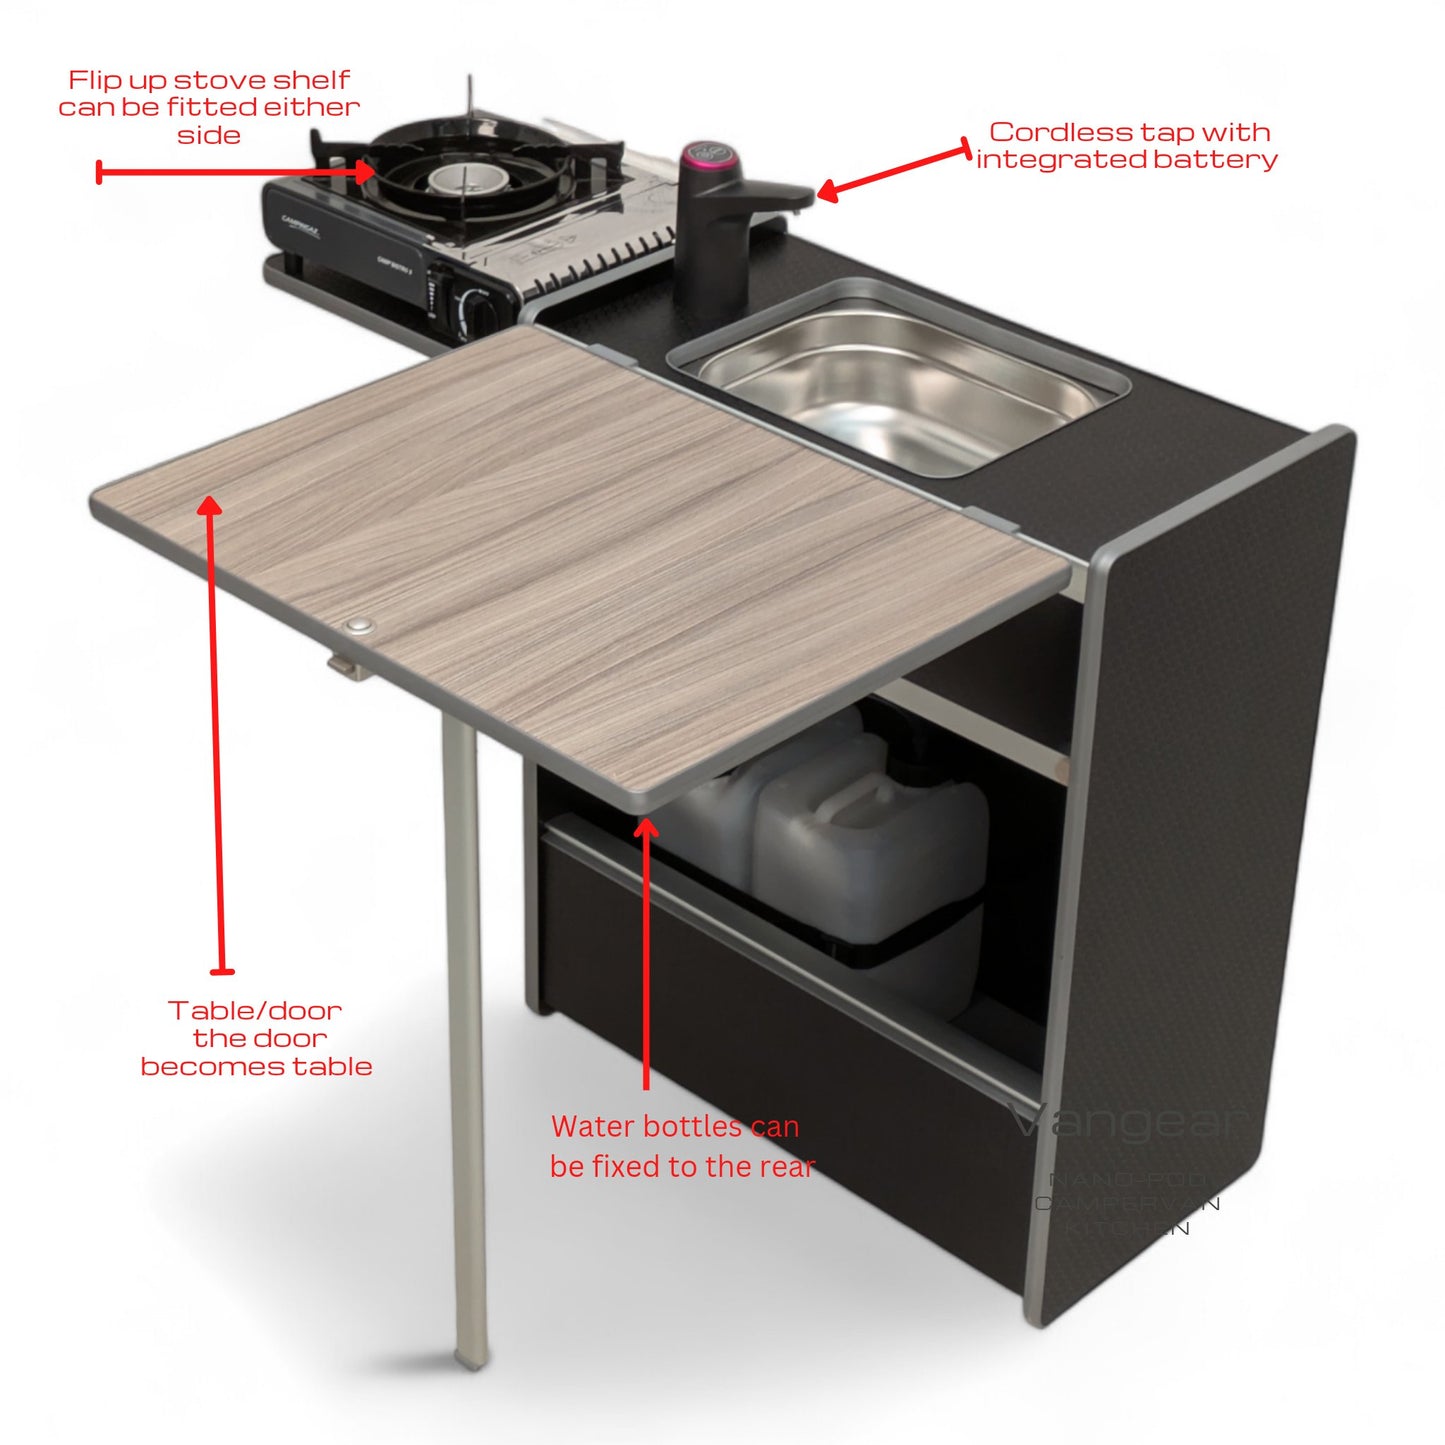 NEW Vangear Nano - Pod 2.2 campervan kitchen - Black with Driftwood door - Vangear - EU